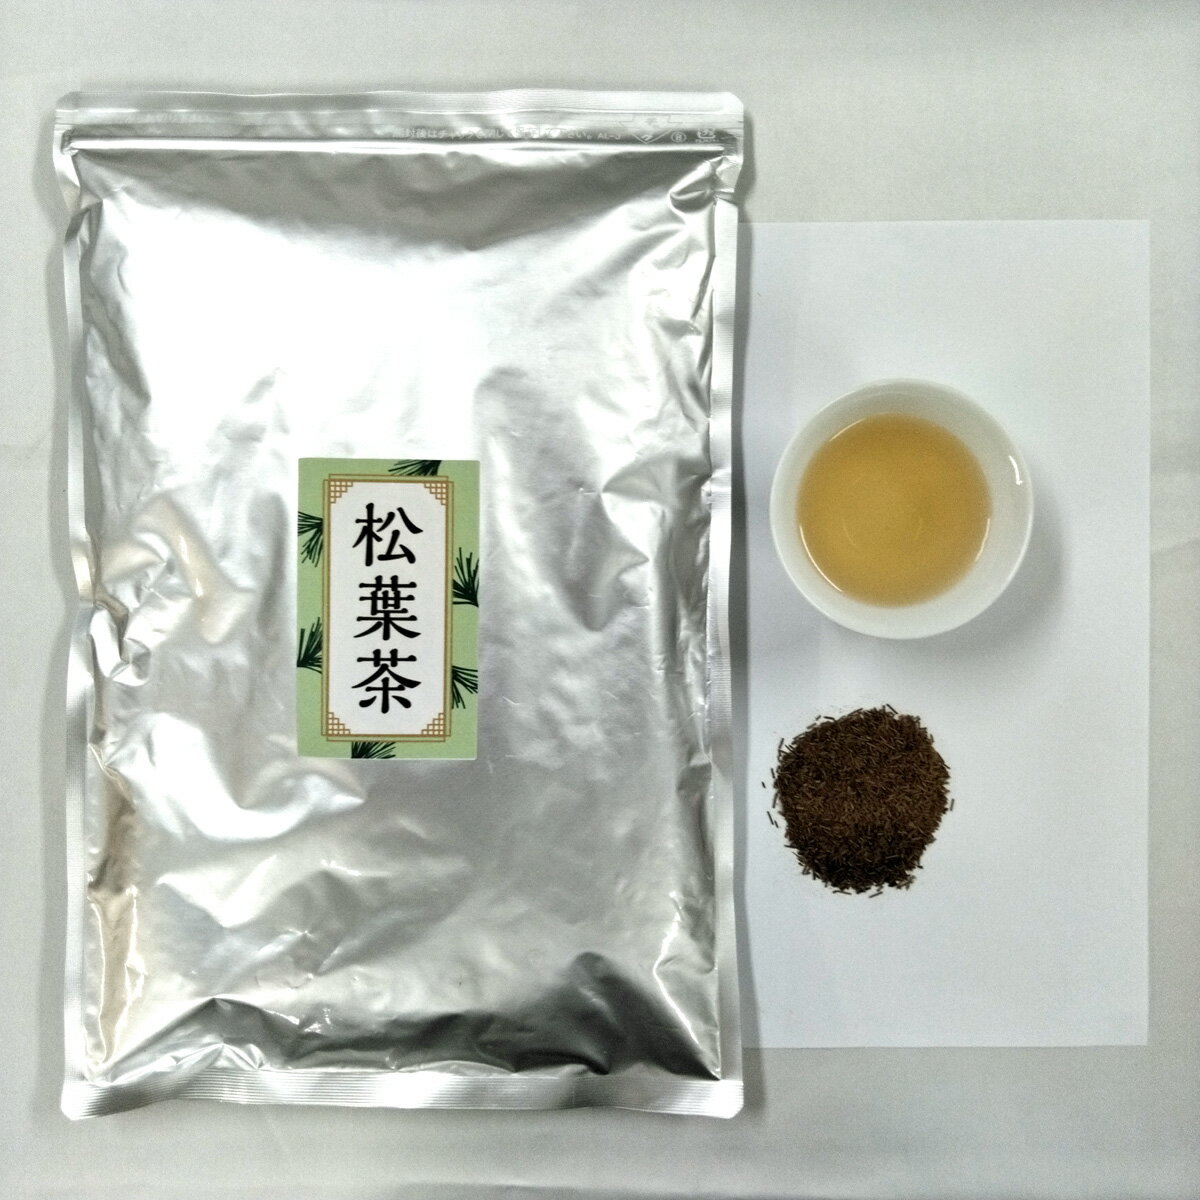 松葉茶 500g 国内焙煎 松葉 業務用 健康茶 植物茶 ハ